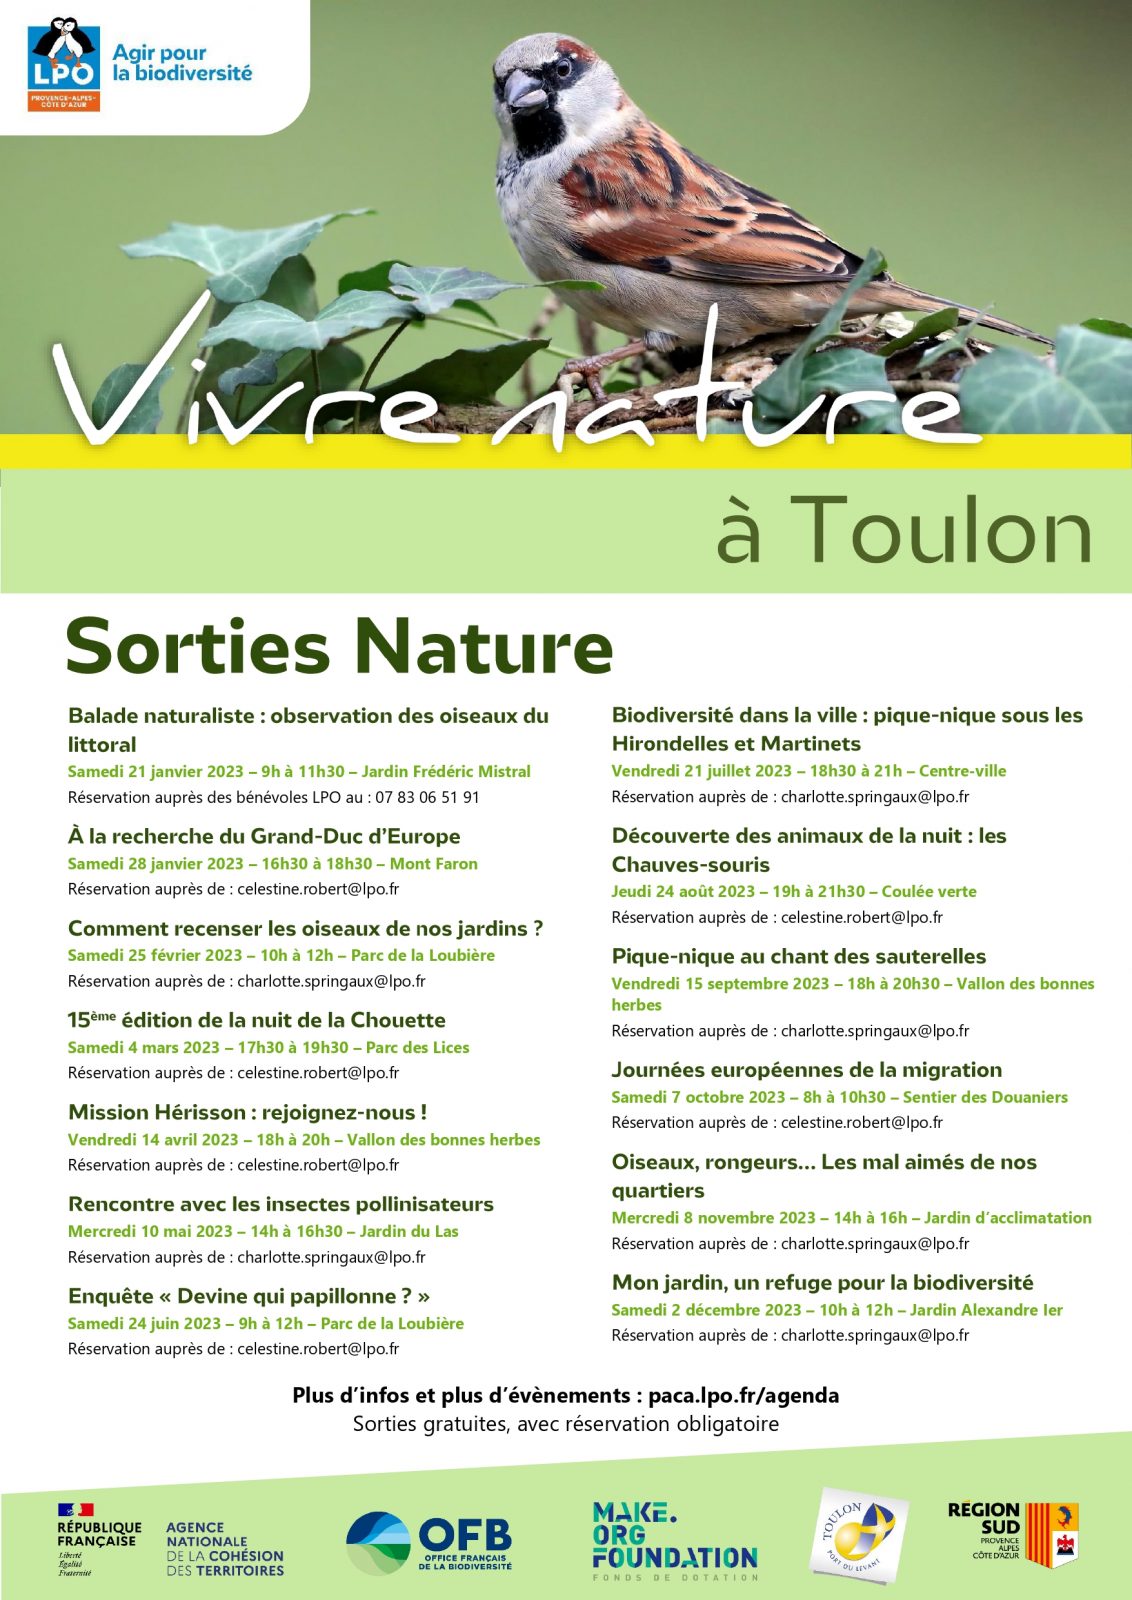 Sortie nature à Toulon avec la LPO – Oiseaux, rongeurs… Tout sur les mal aimés de nos quartiers à Toulon - 0